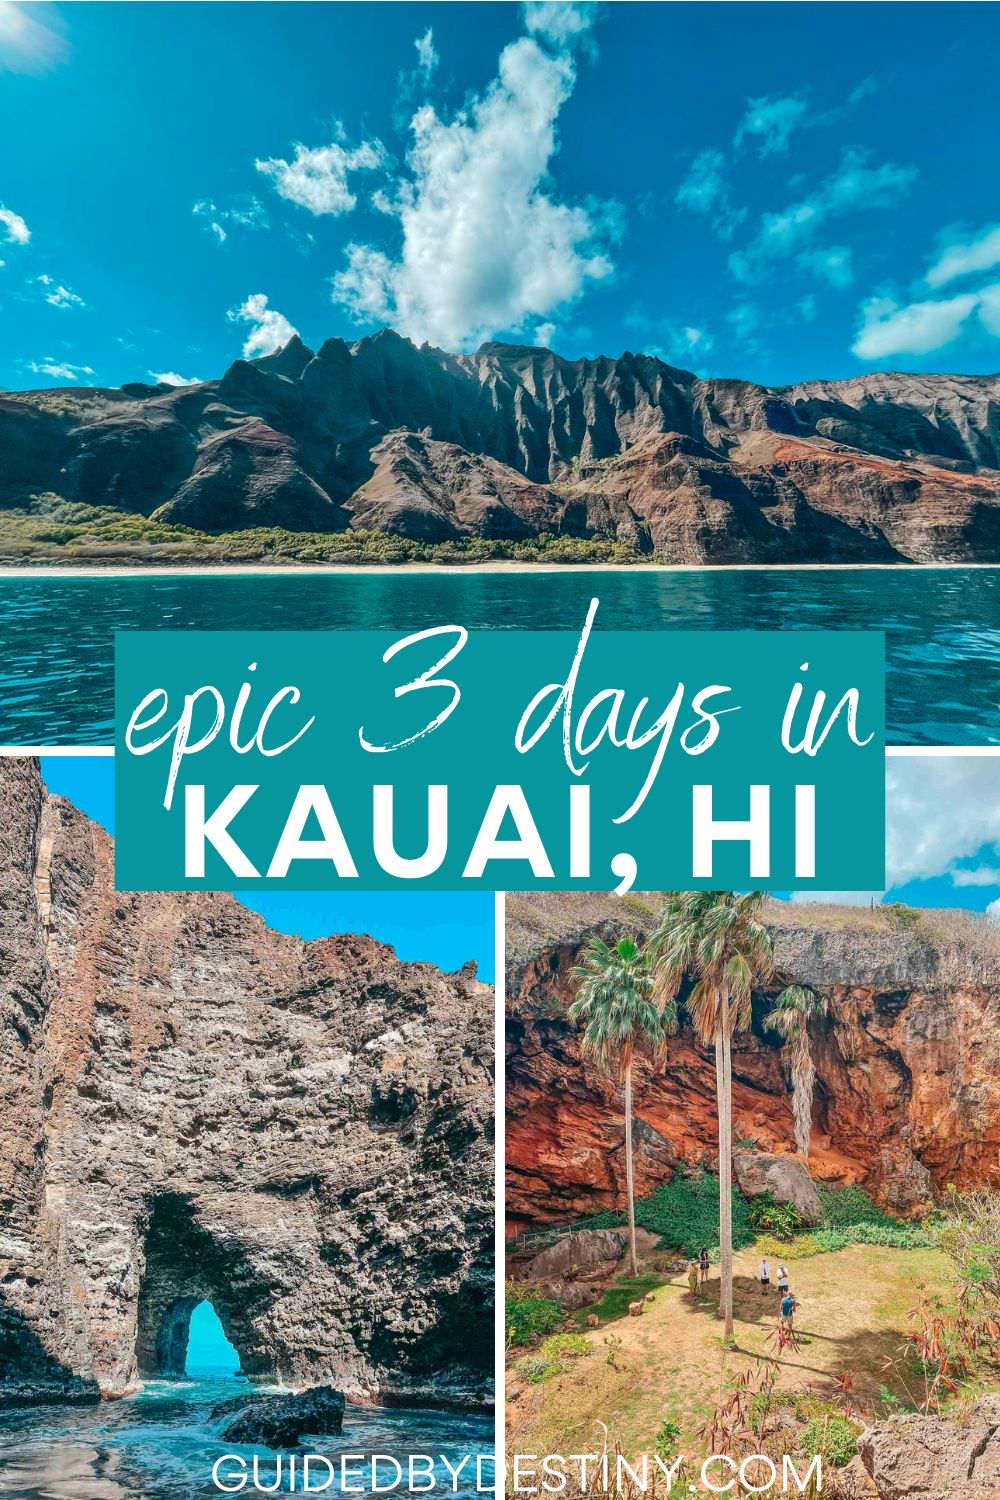 Epic 3 days in Kauai, HI